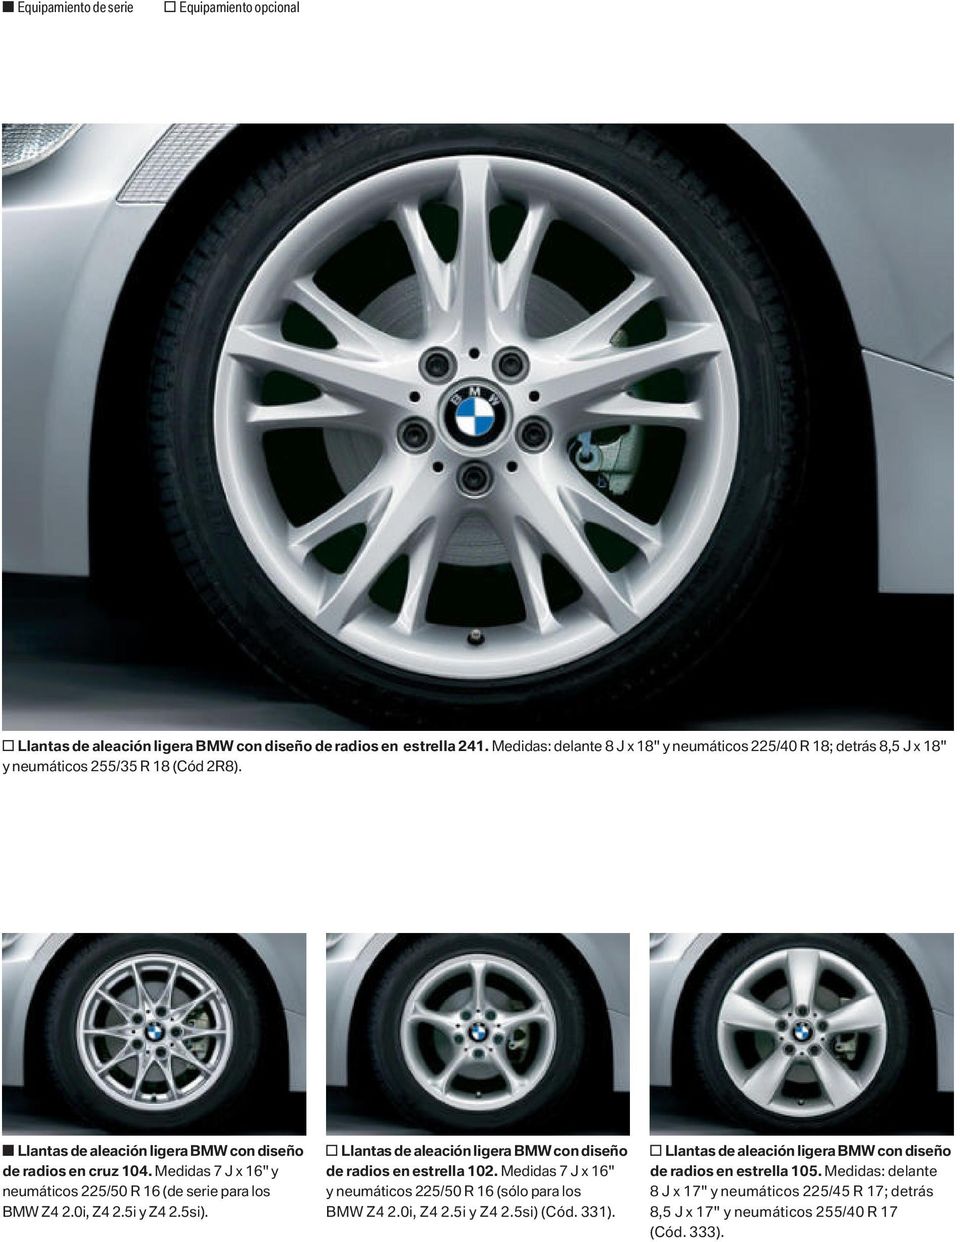 Medidas 7 J x 16" y neumáticos 225/50 R 16 (de serie para los BMW, y ). o Llantas de aleación ligera BMW con diseño de radios en estrella 102.